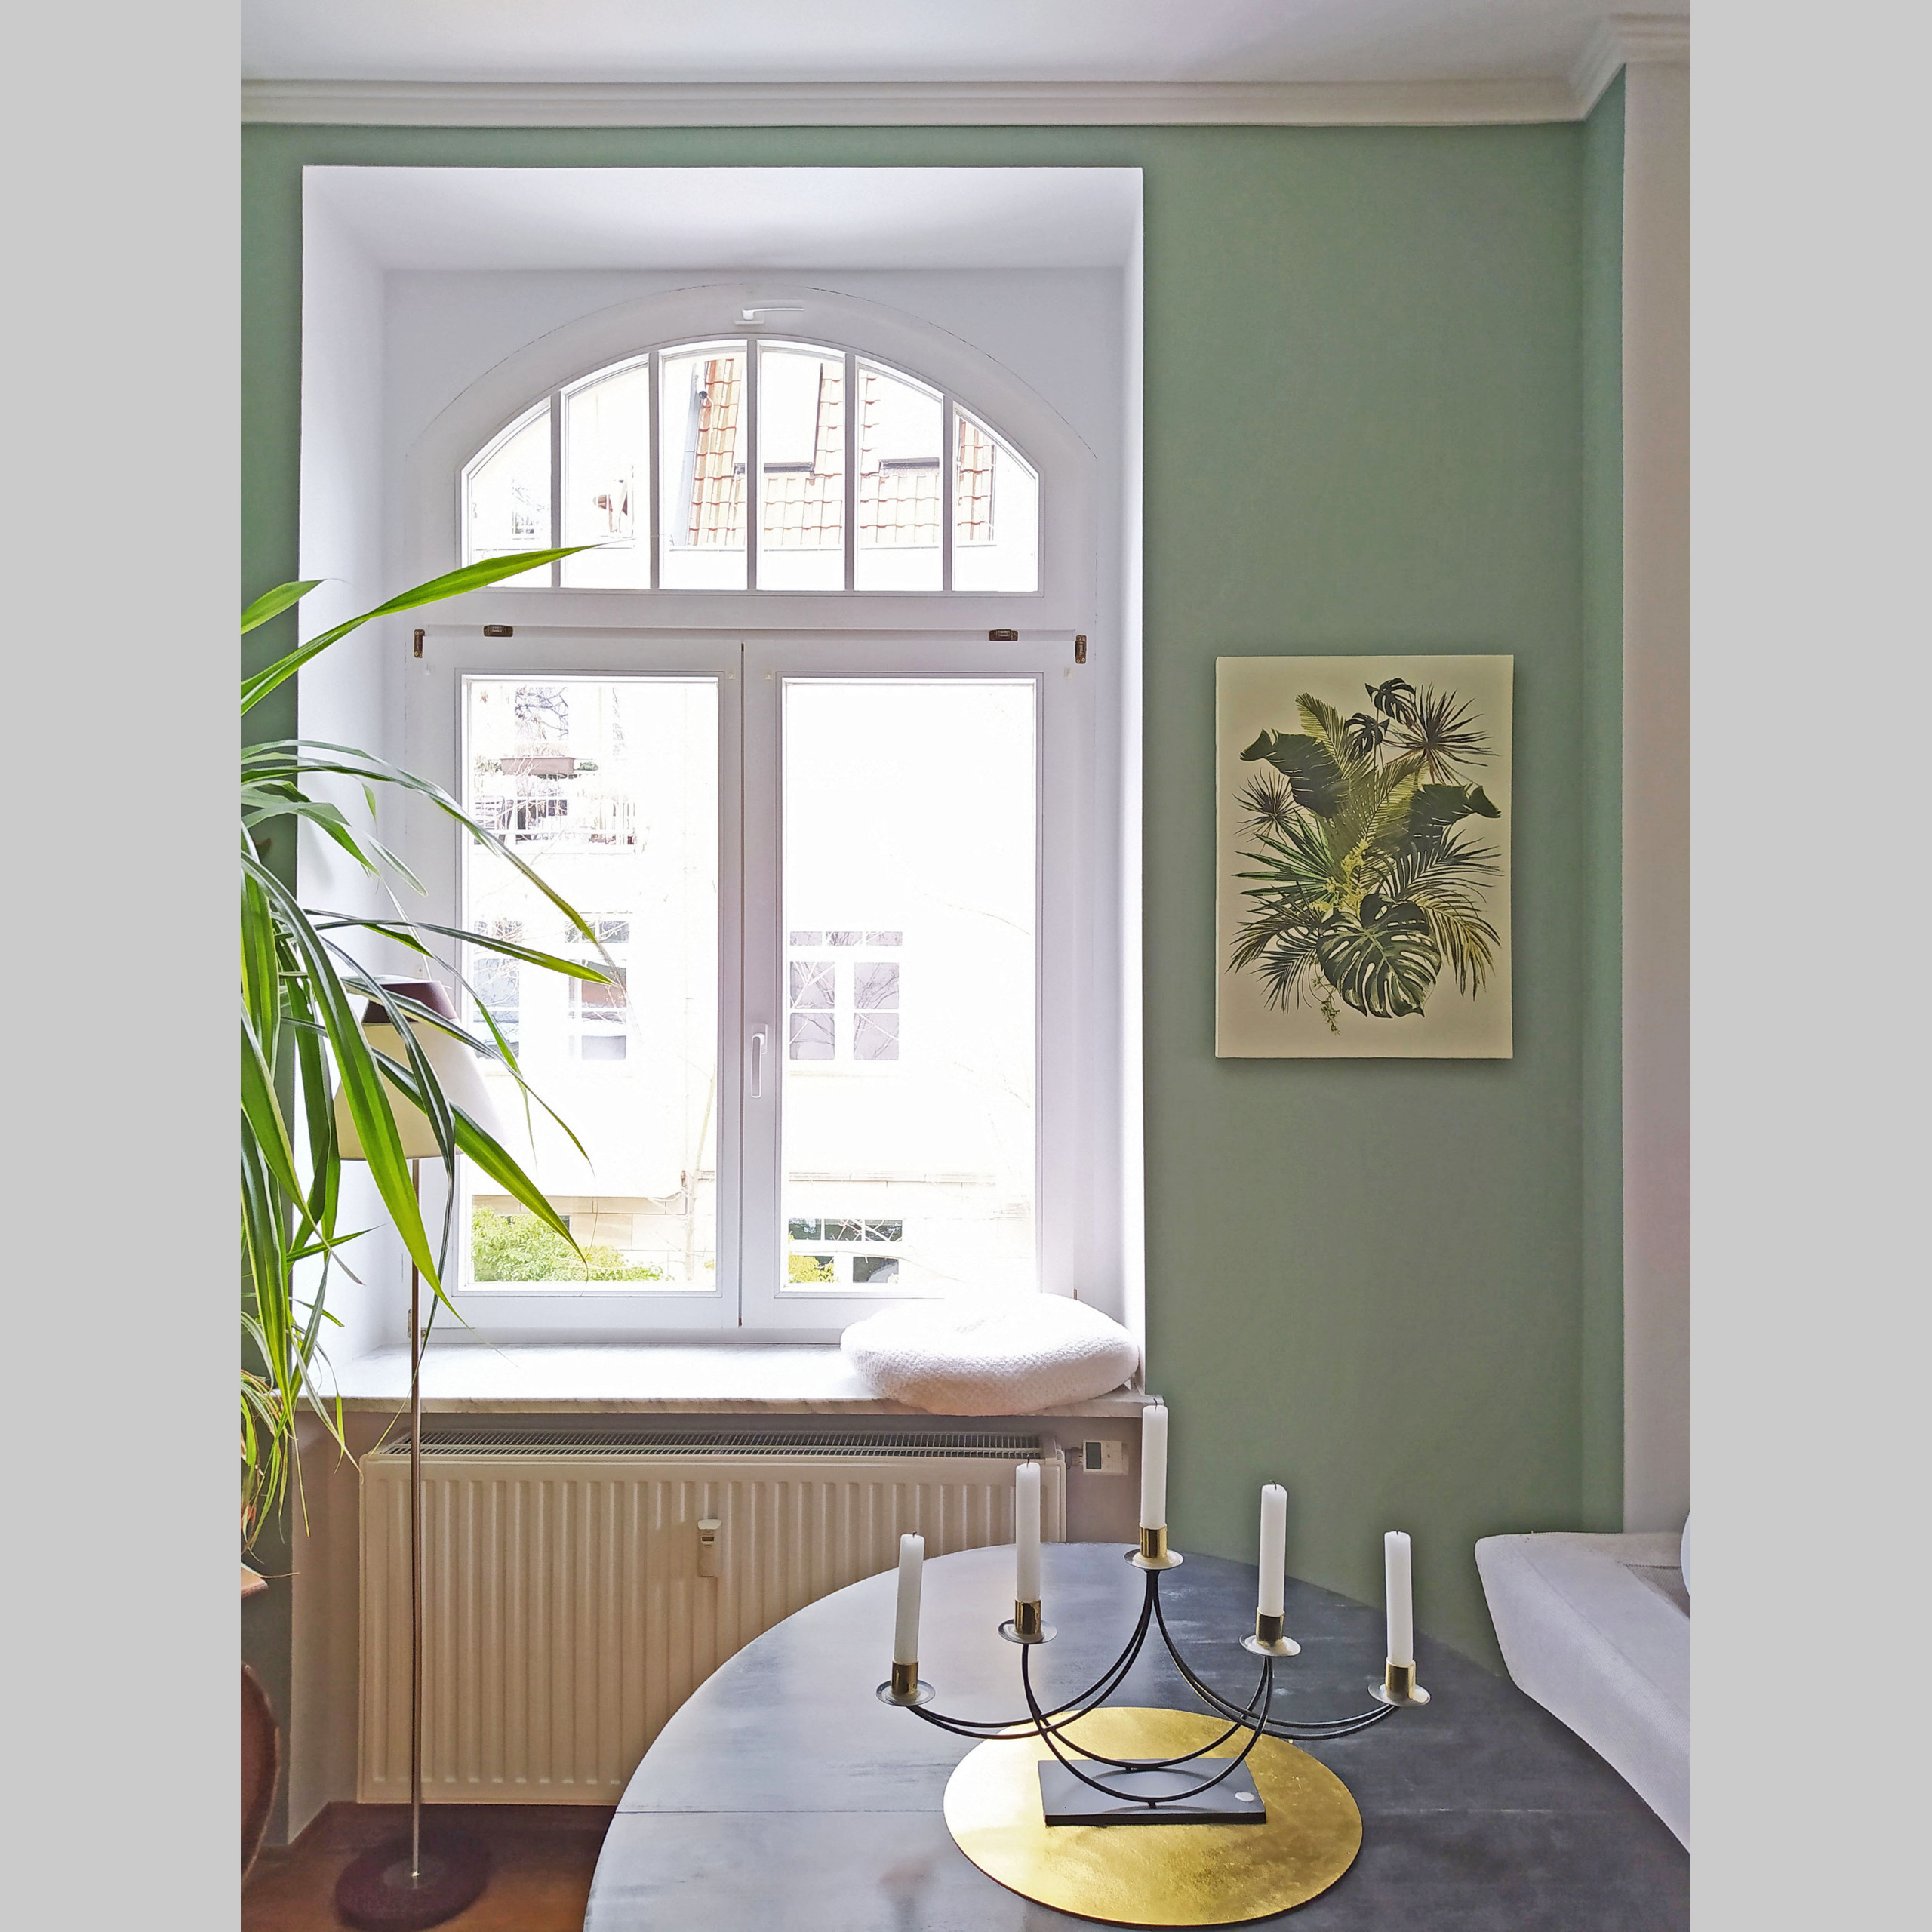 Wohnraum_Fenster in grüner Wand